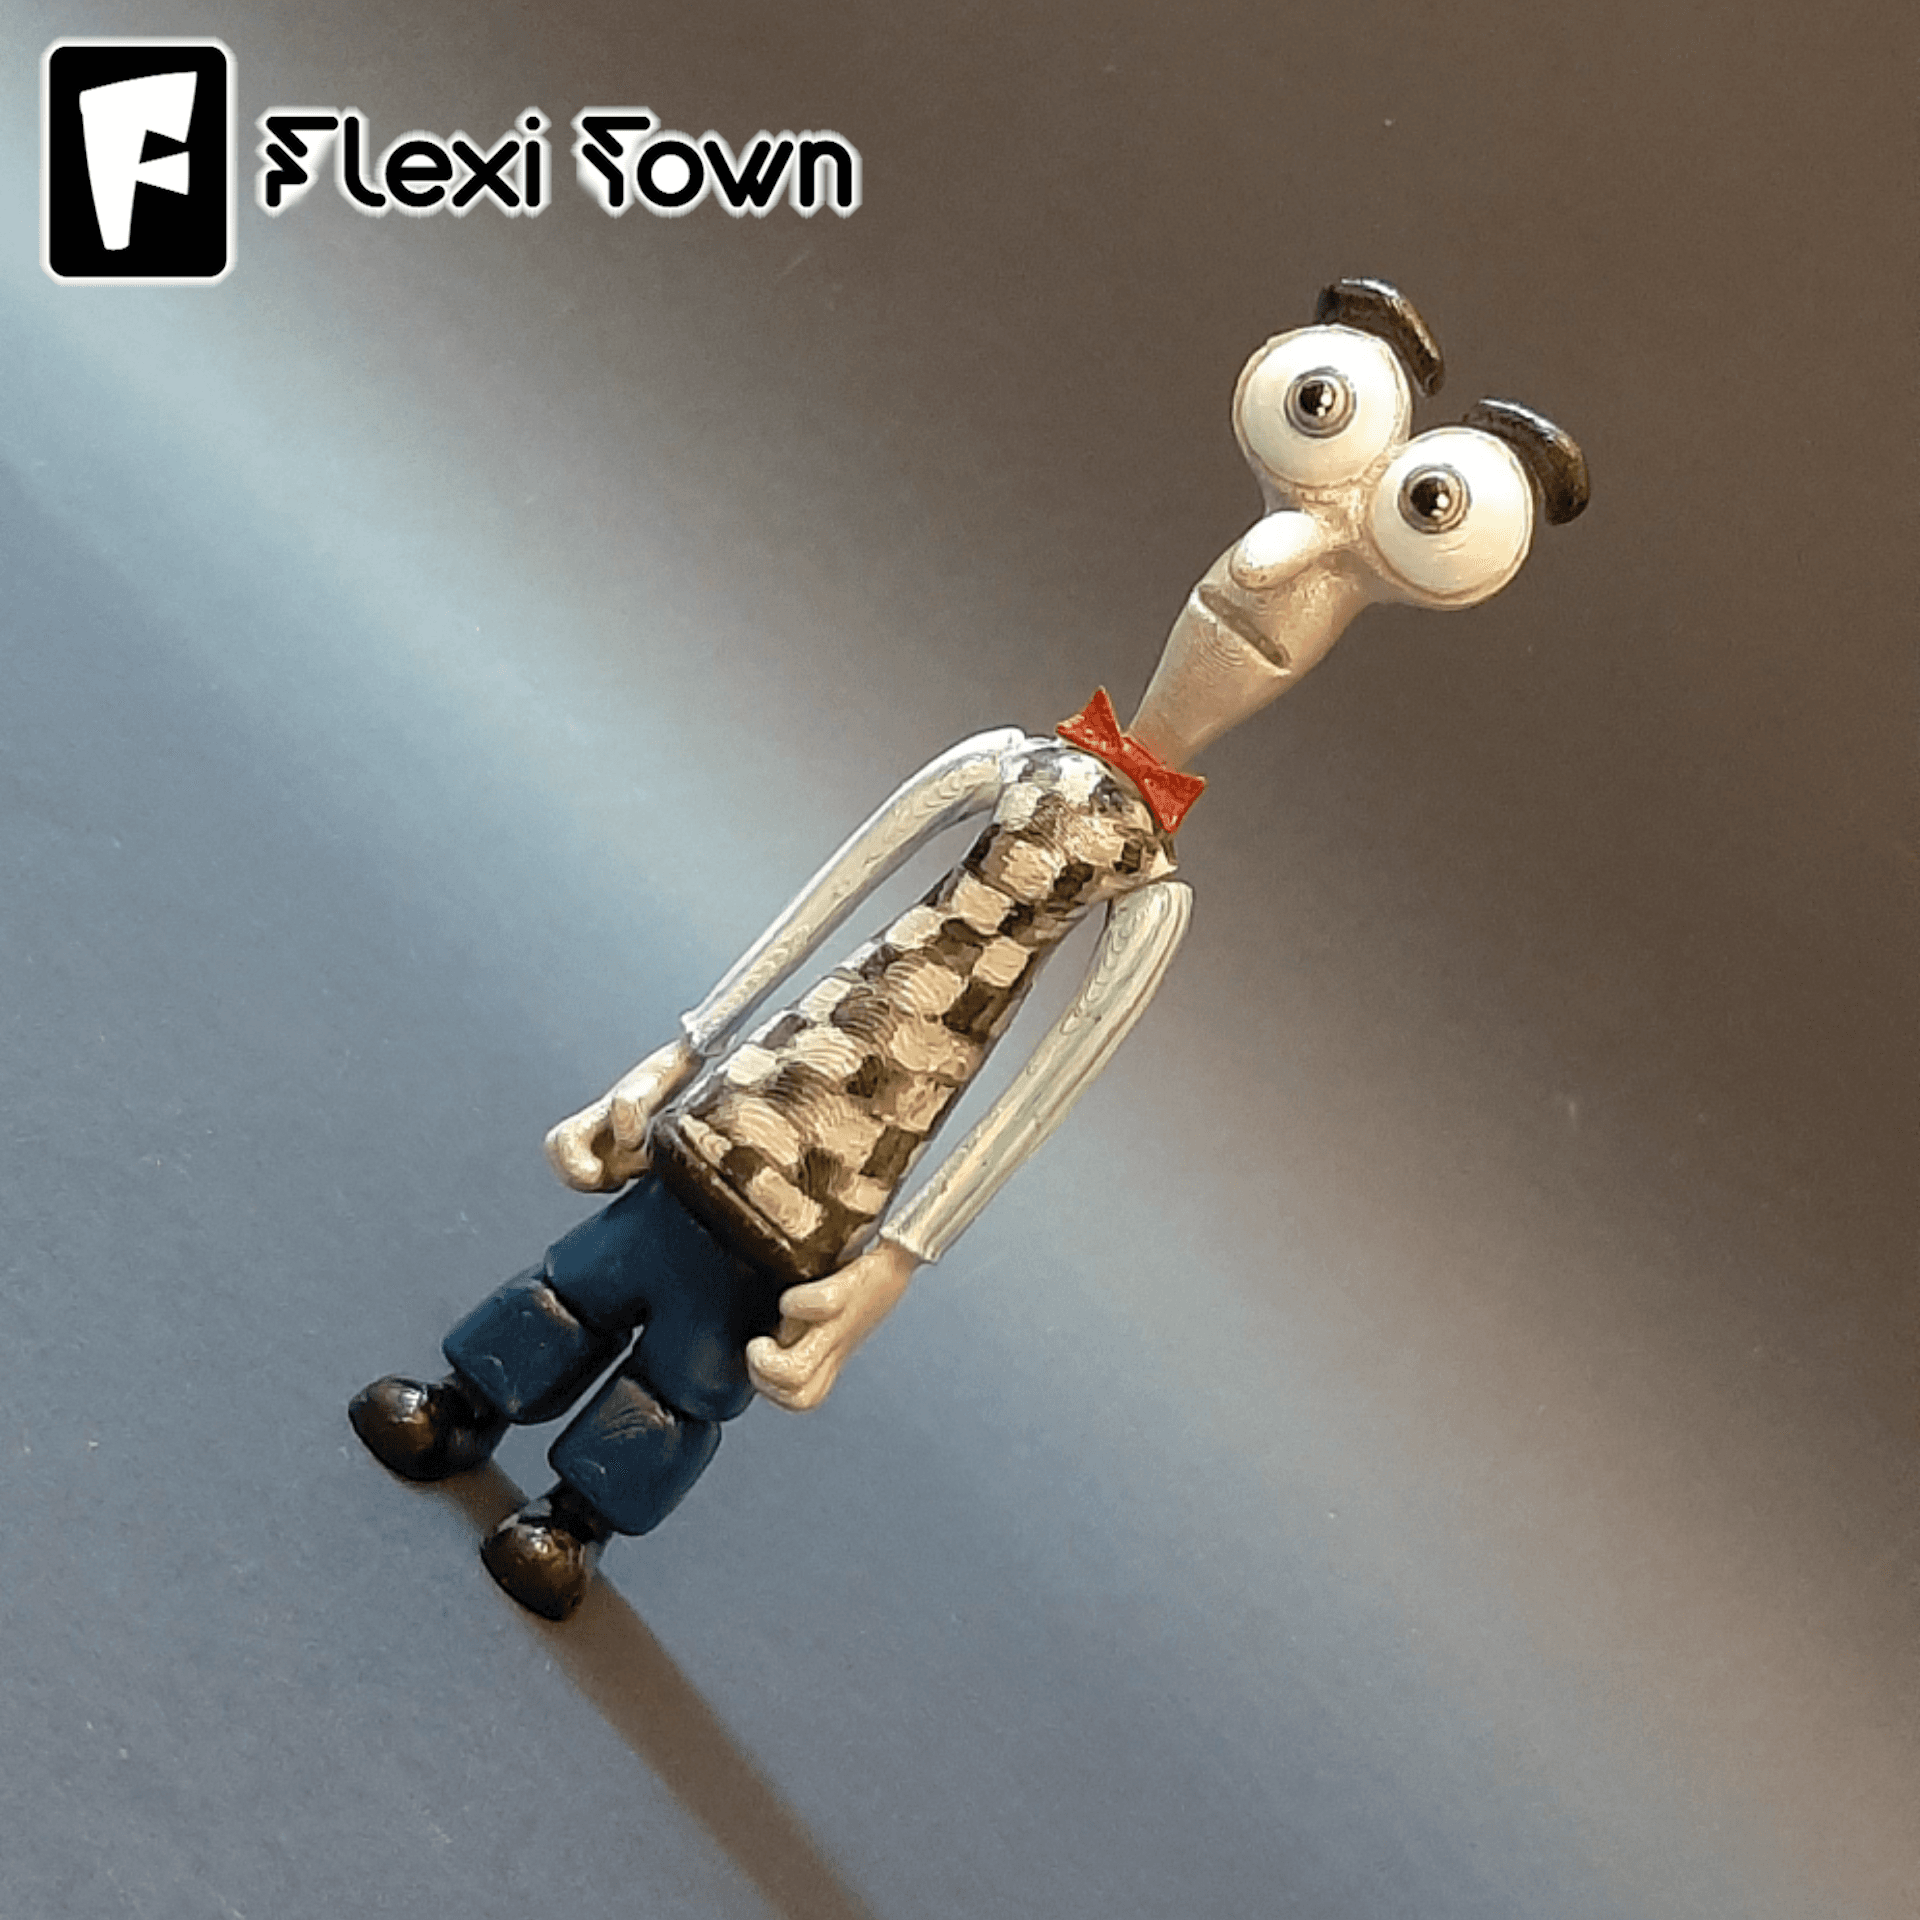 Flexi Print-in-Place Fear 3d model